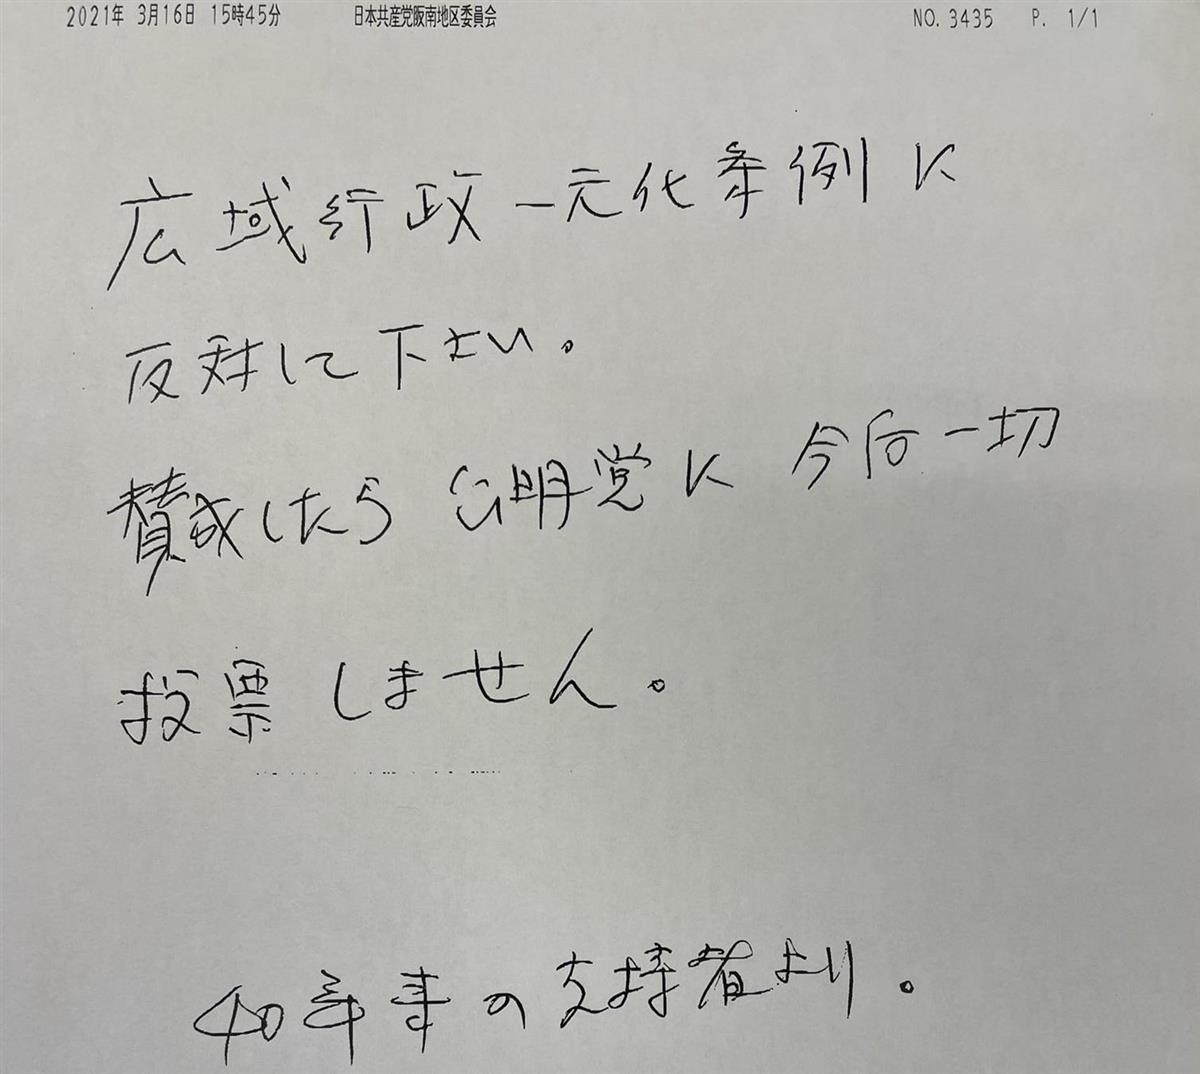 公明党大阪市議のもとに届いたファクス用紙。上部に「日本共産党阪南地区委員会」と印字されている